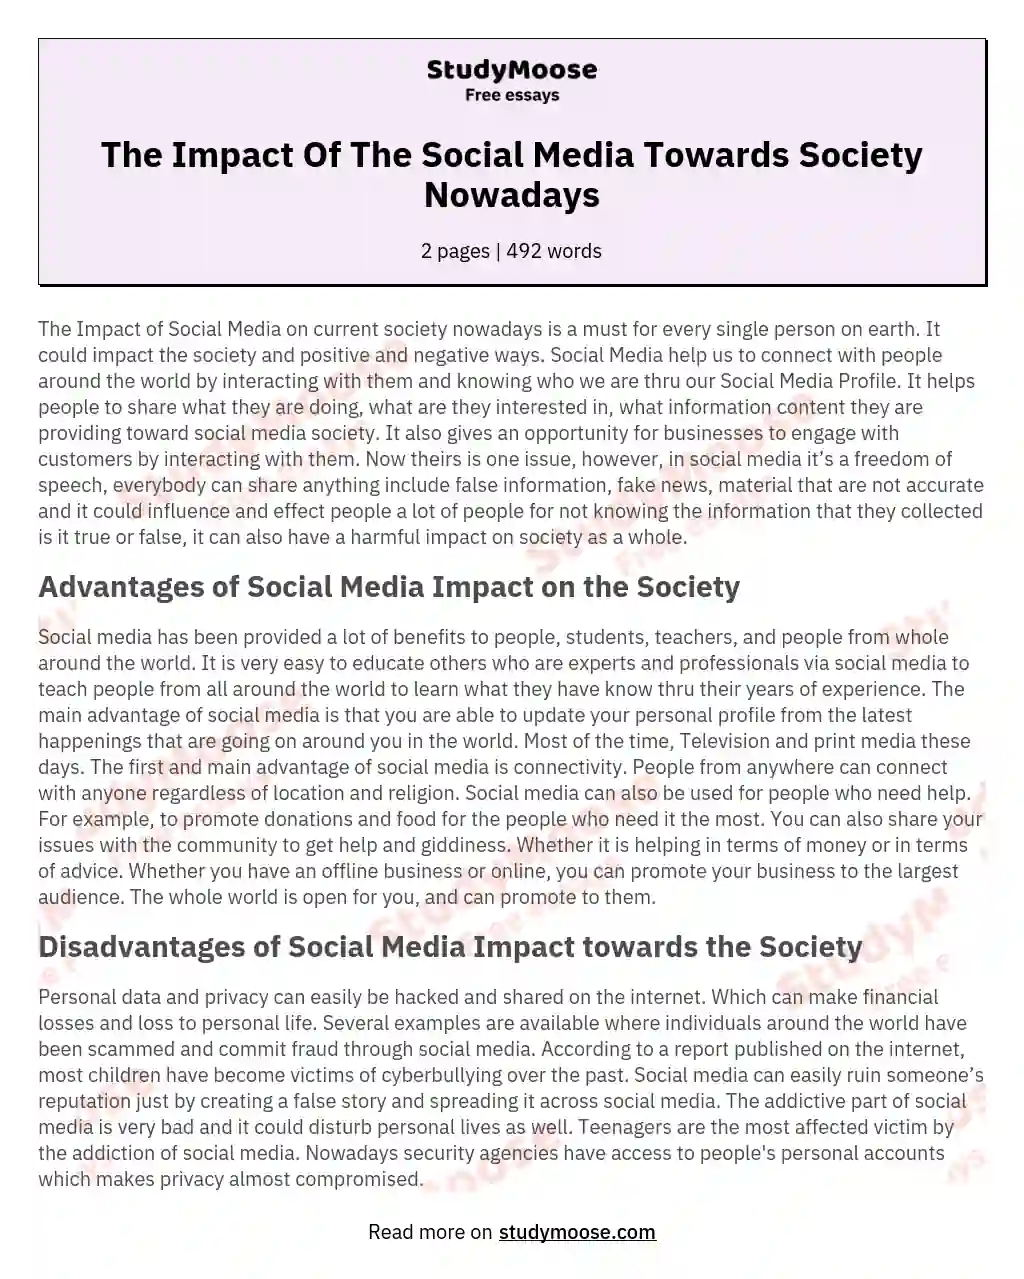 The Impact Of The Social Media Towards Society Nowadays essay